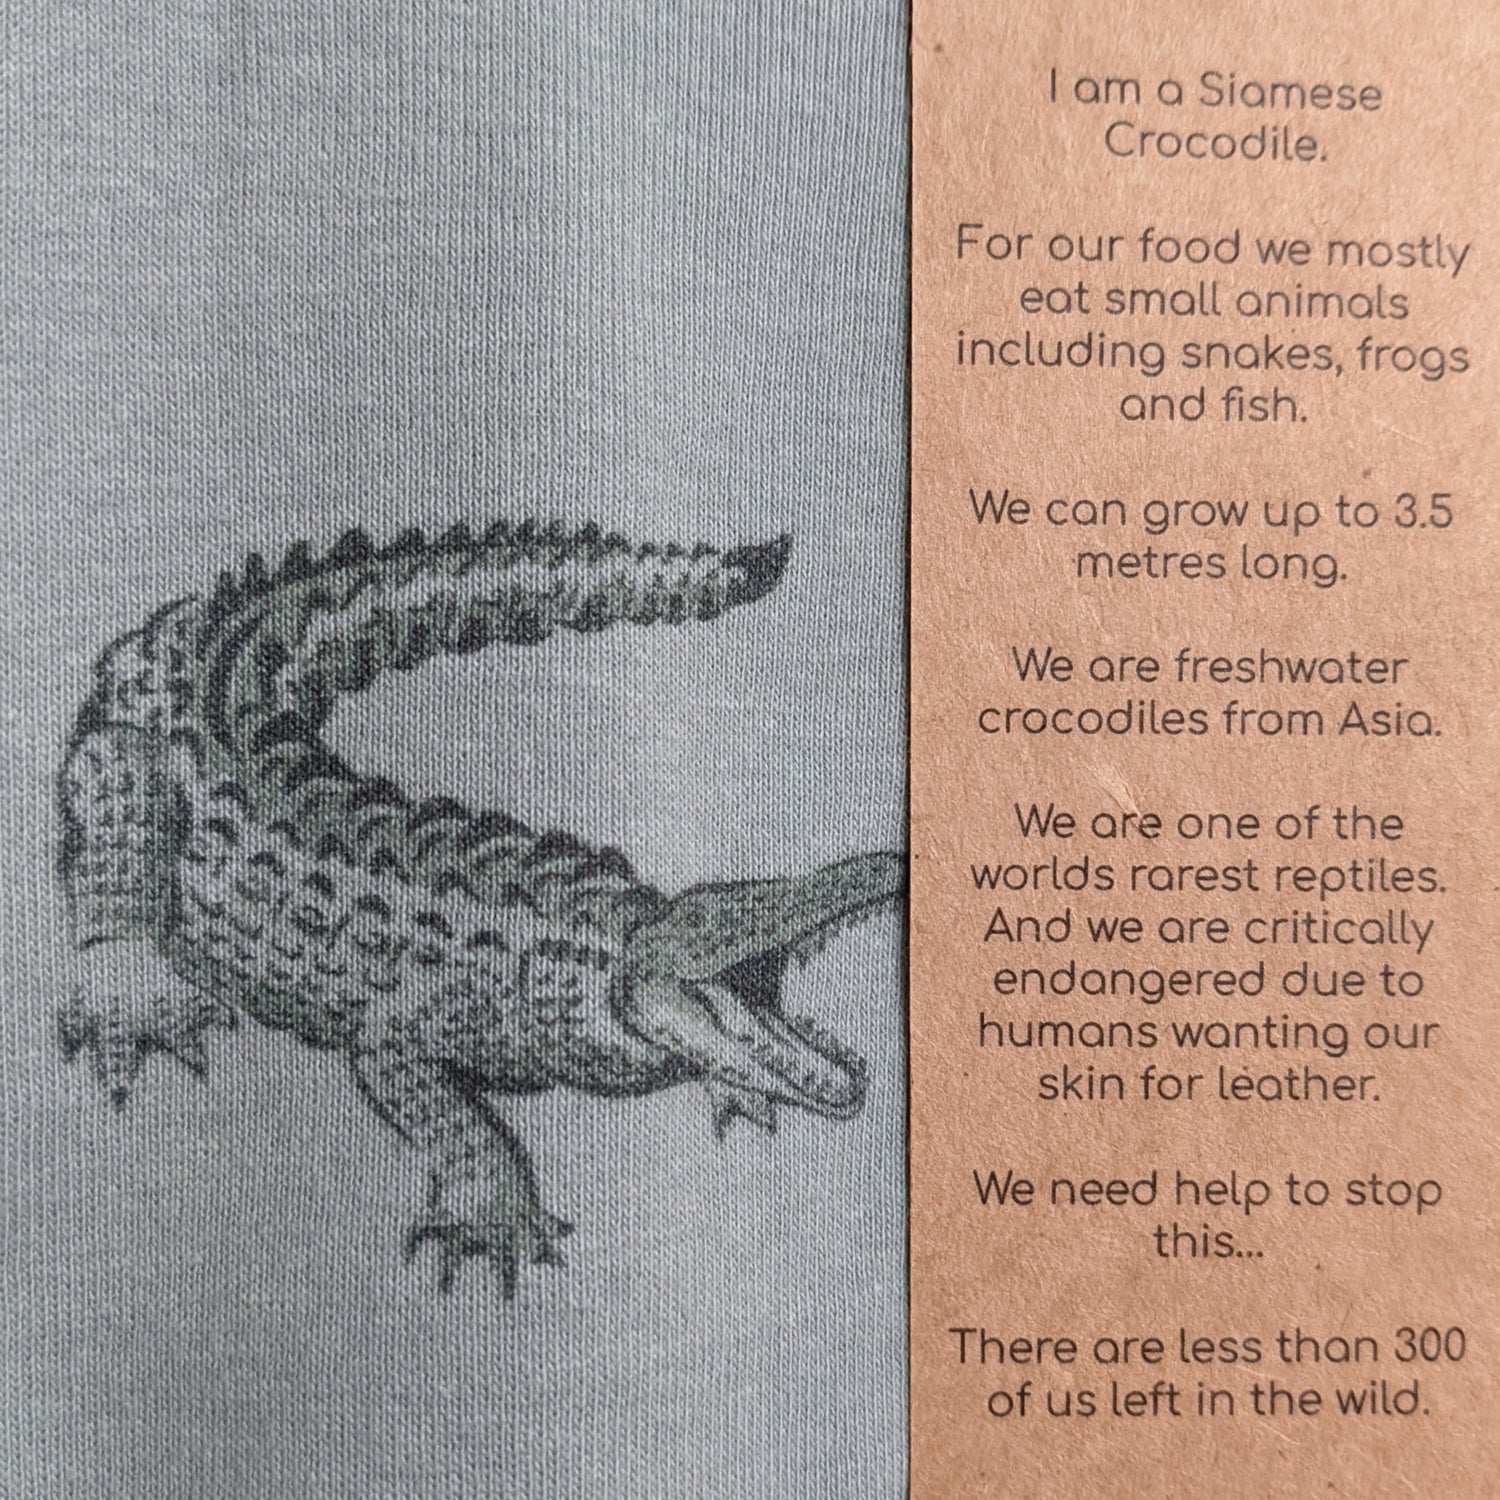 Crocodile romper info